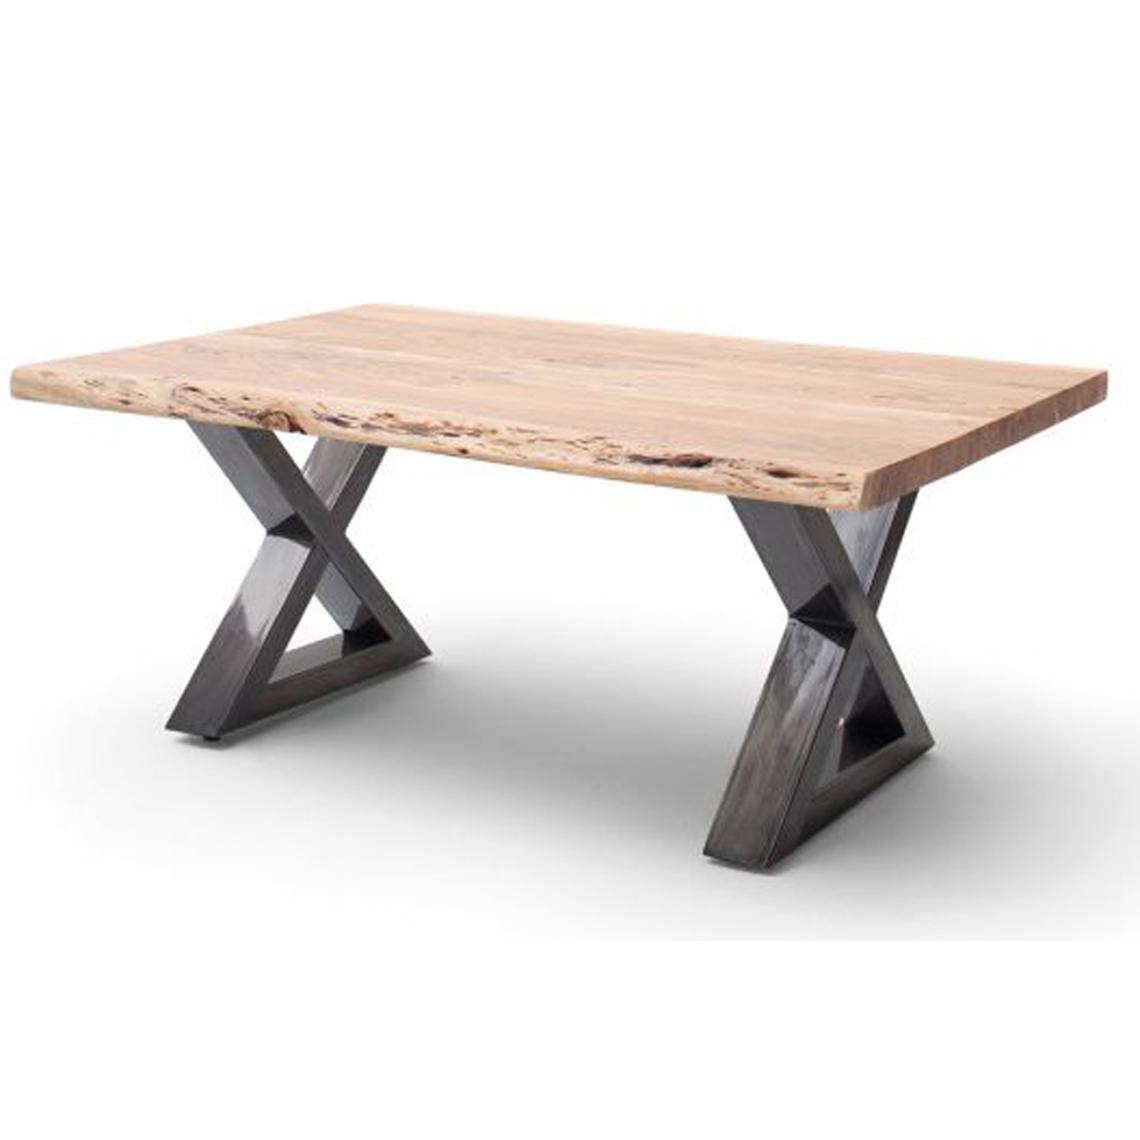 Pegane - Table basse en bois d'acacia massif naturel / acier antique - L.110 x H.45 x P.70 cm - Tables basses